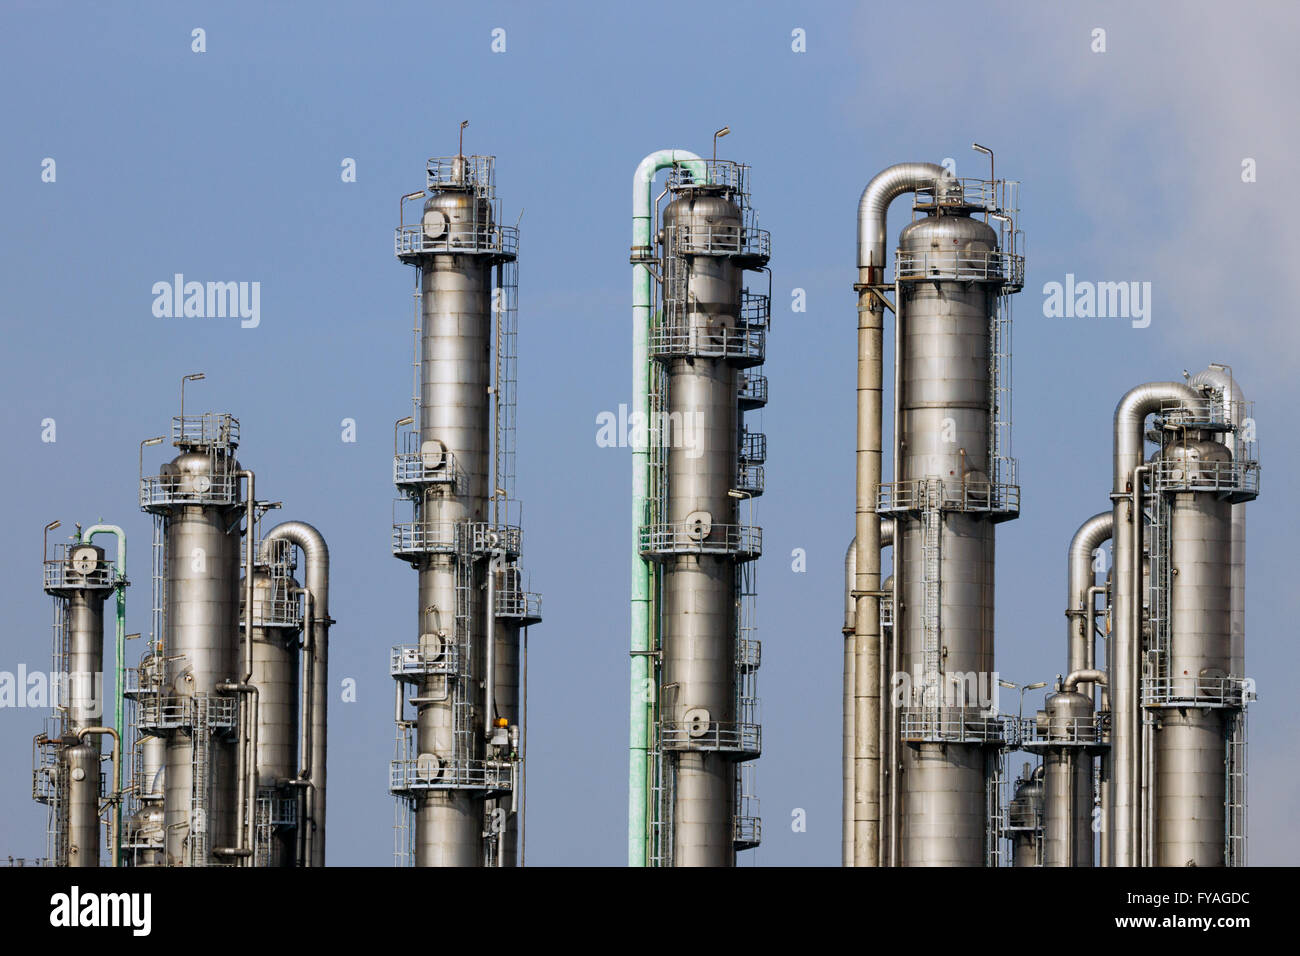 Los ductos de una refinería de petróleo y gas plantas industriales. Foto de stock